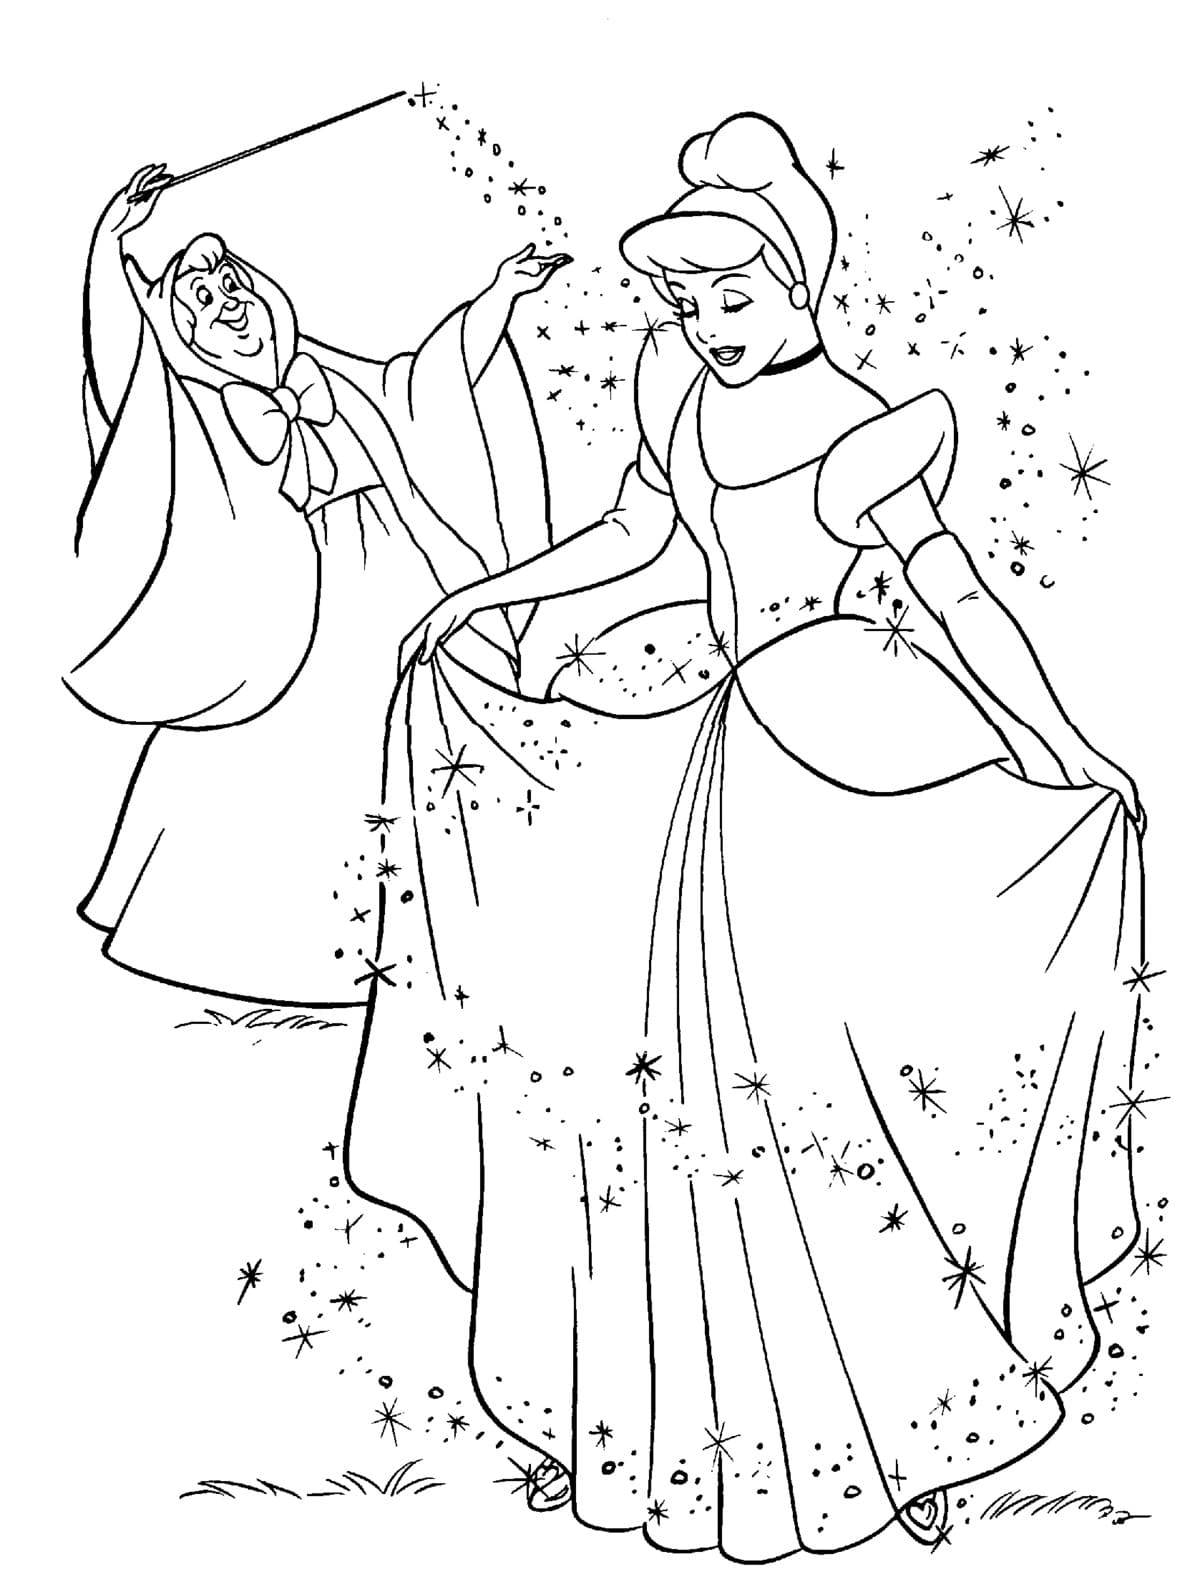 Dibujos de Princesas para colorear - 100 imágenes para imprimir gratis